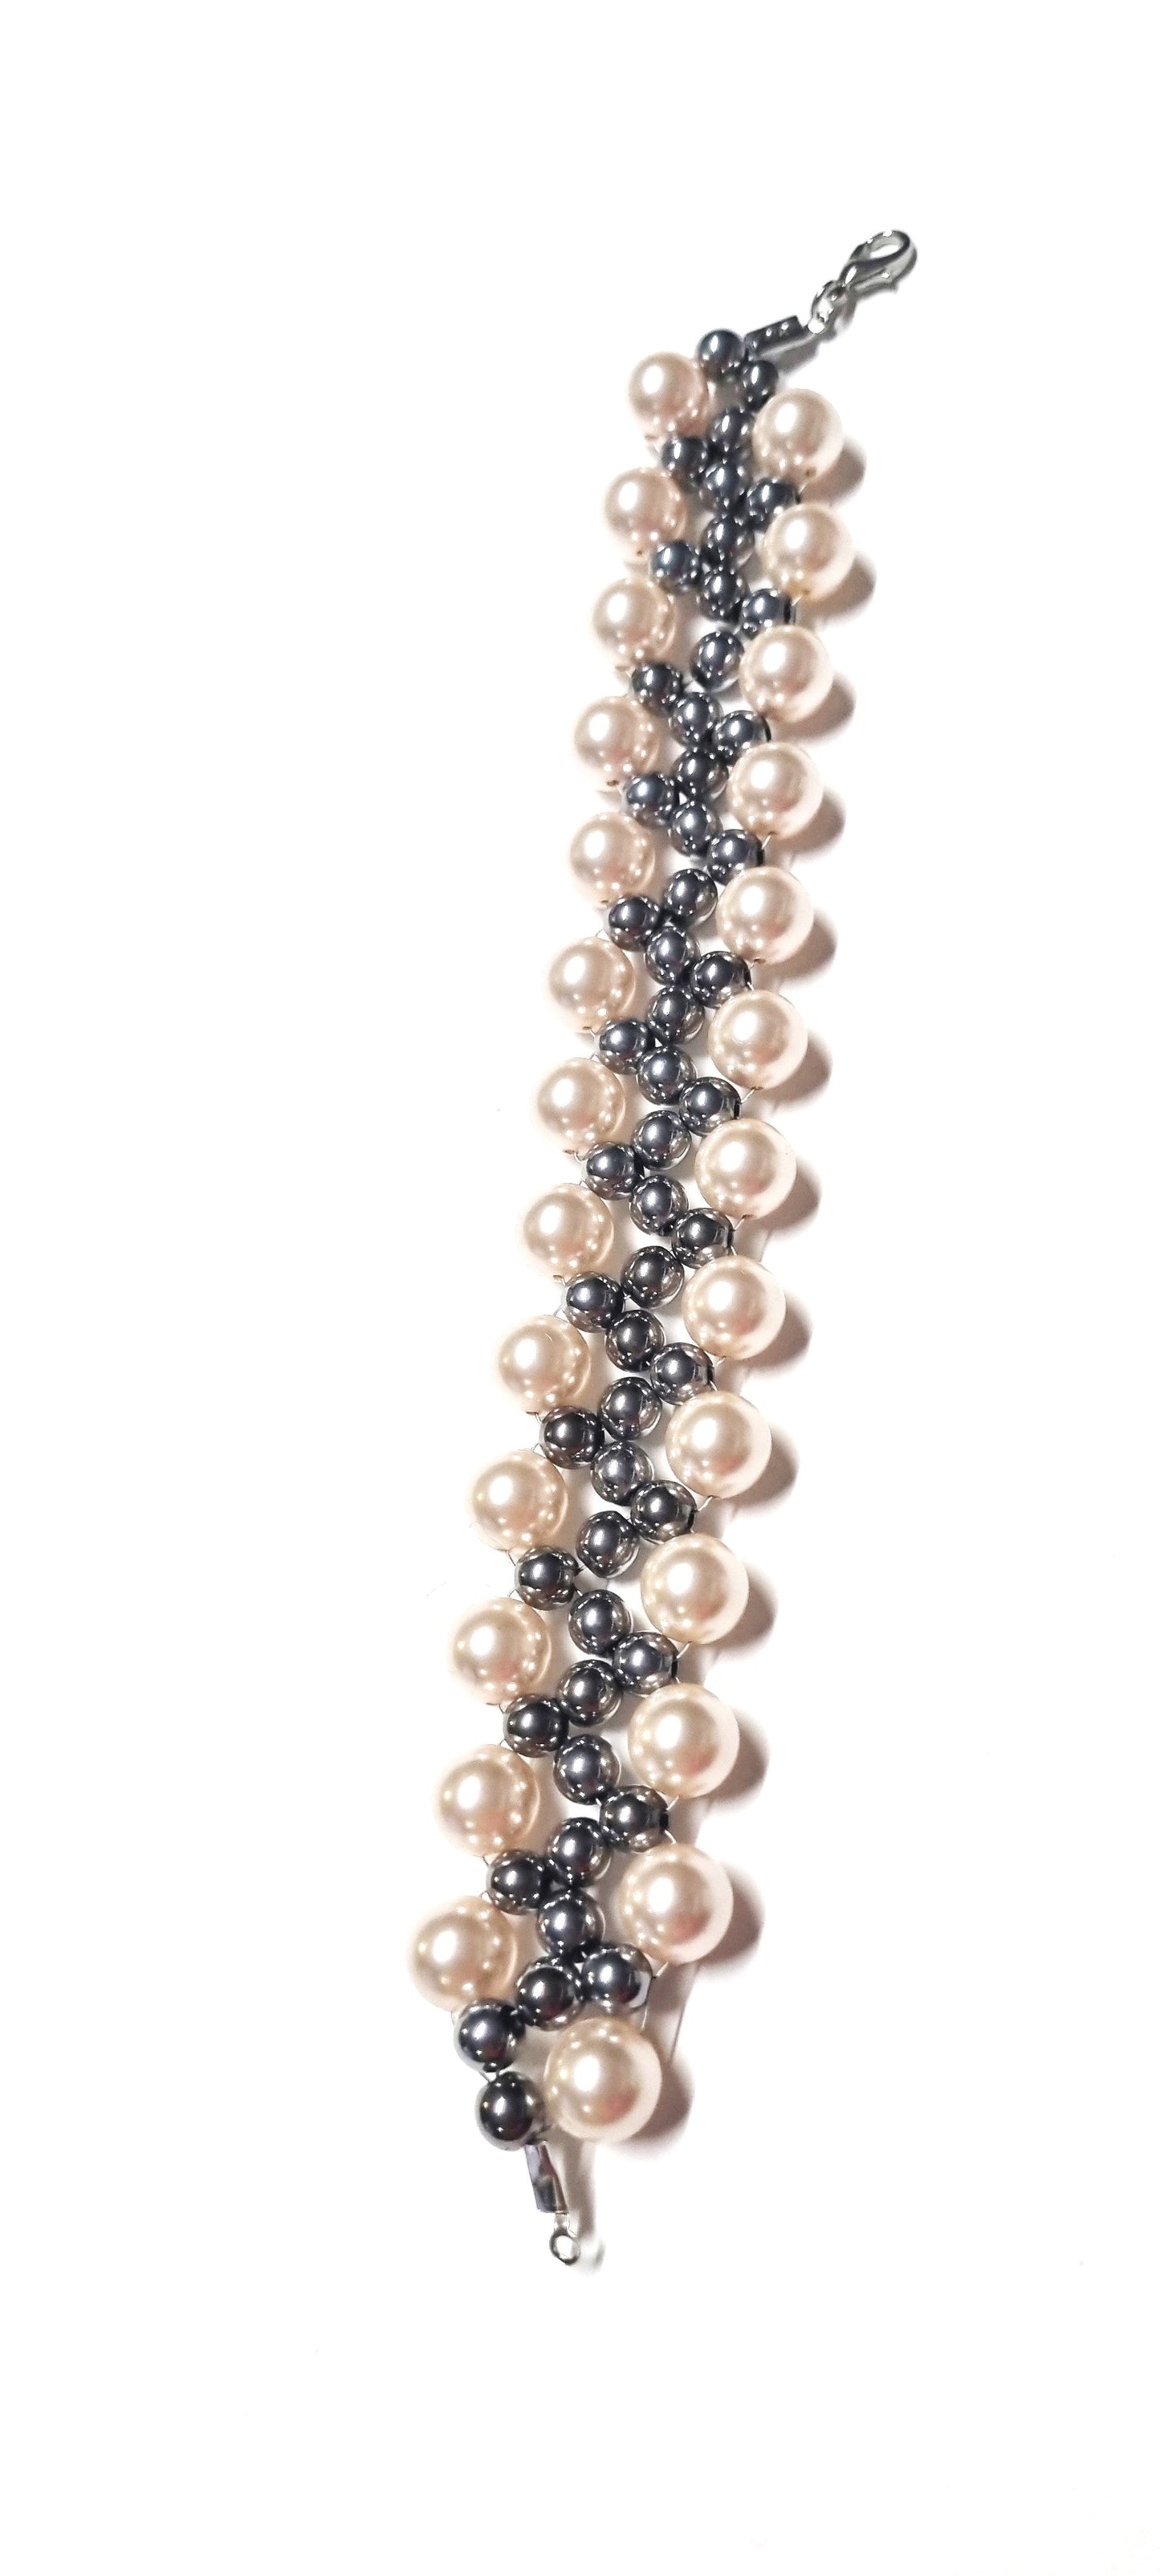 Orecchini LE PERLE .047 perline grigio lucido ematite, montate a spirale con perle cristallo